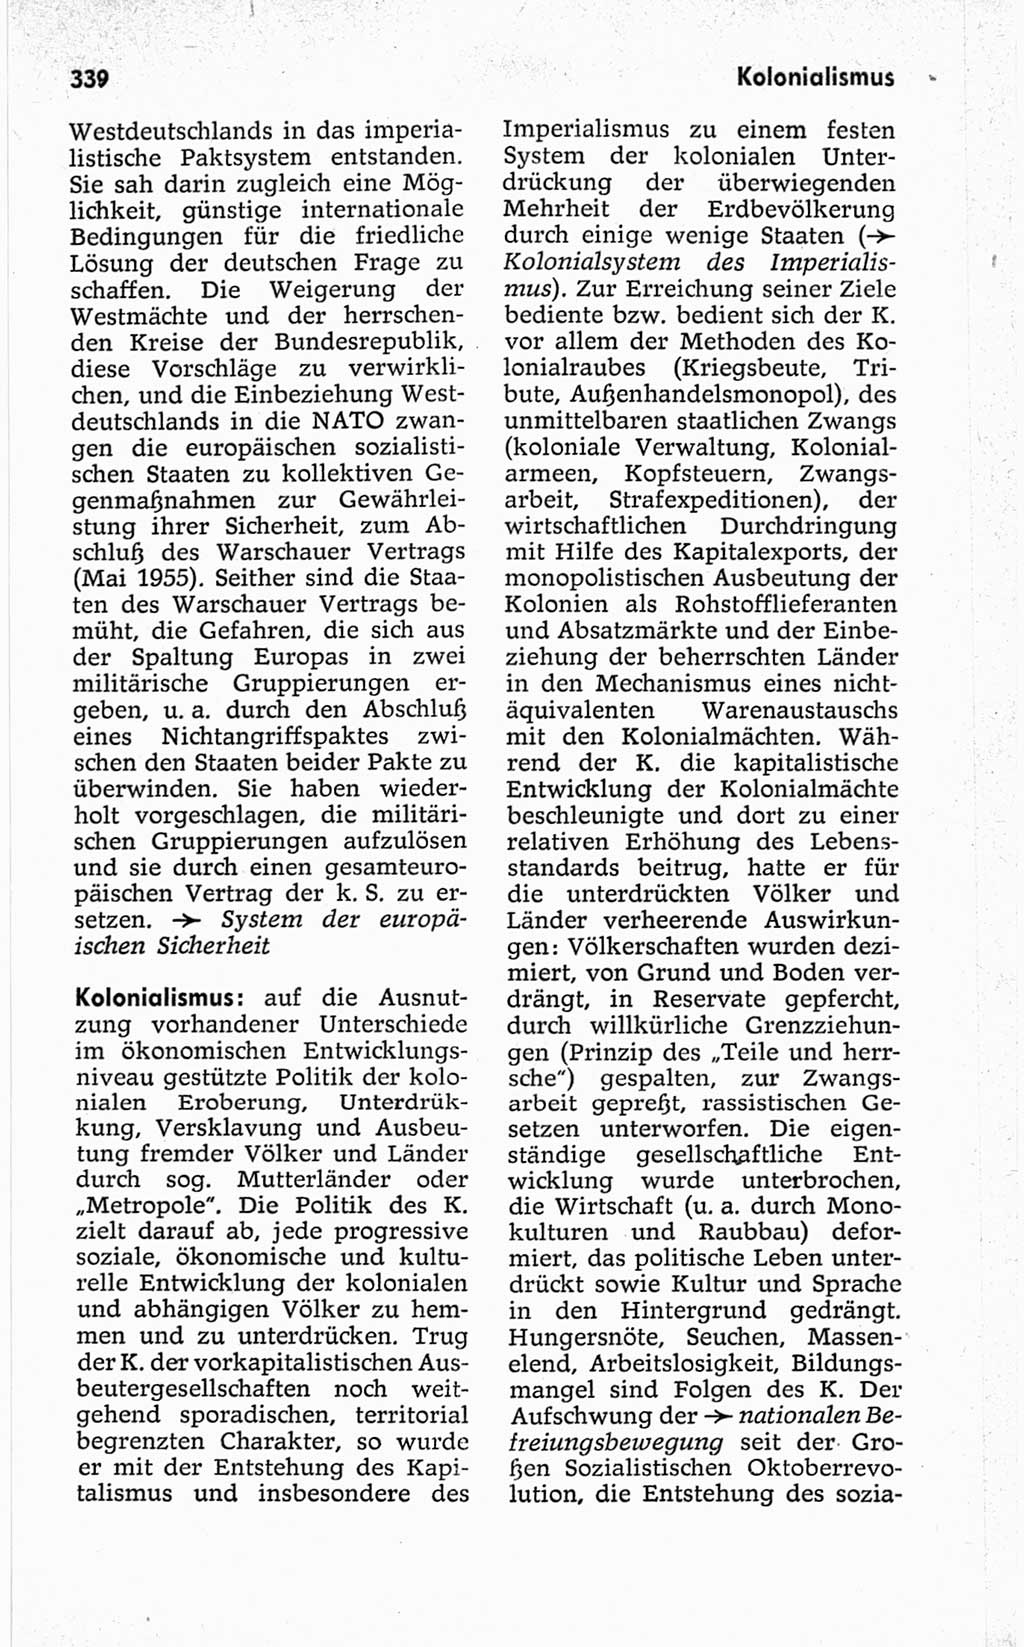 Kleines politisches Wörterbuch [Deutsche Demokratische Republik (DDR)] 1967, Seite 339 (Kl. pol. Wb. DDR 1967, S. 339)